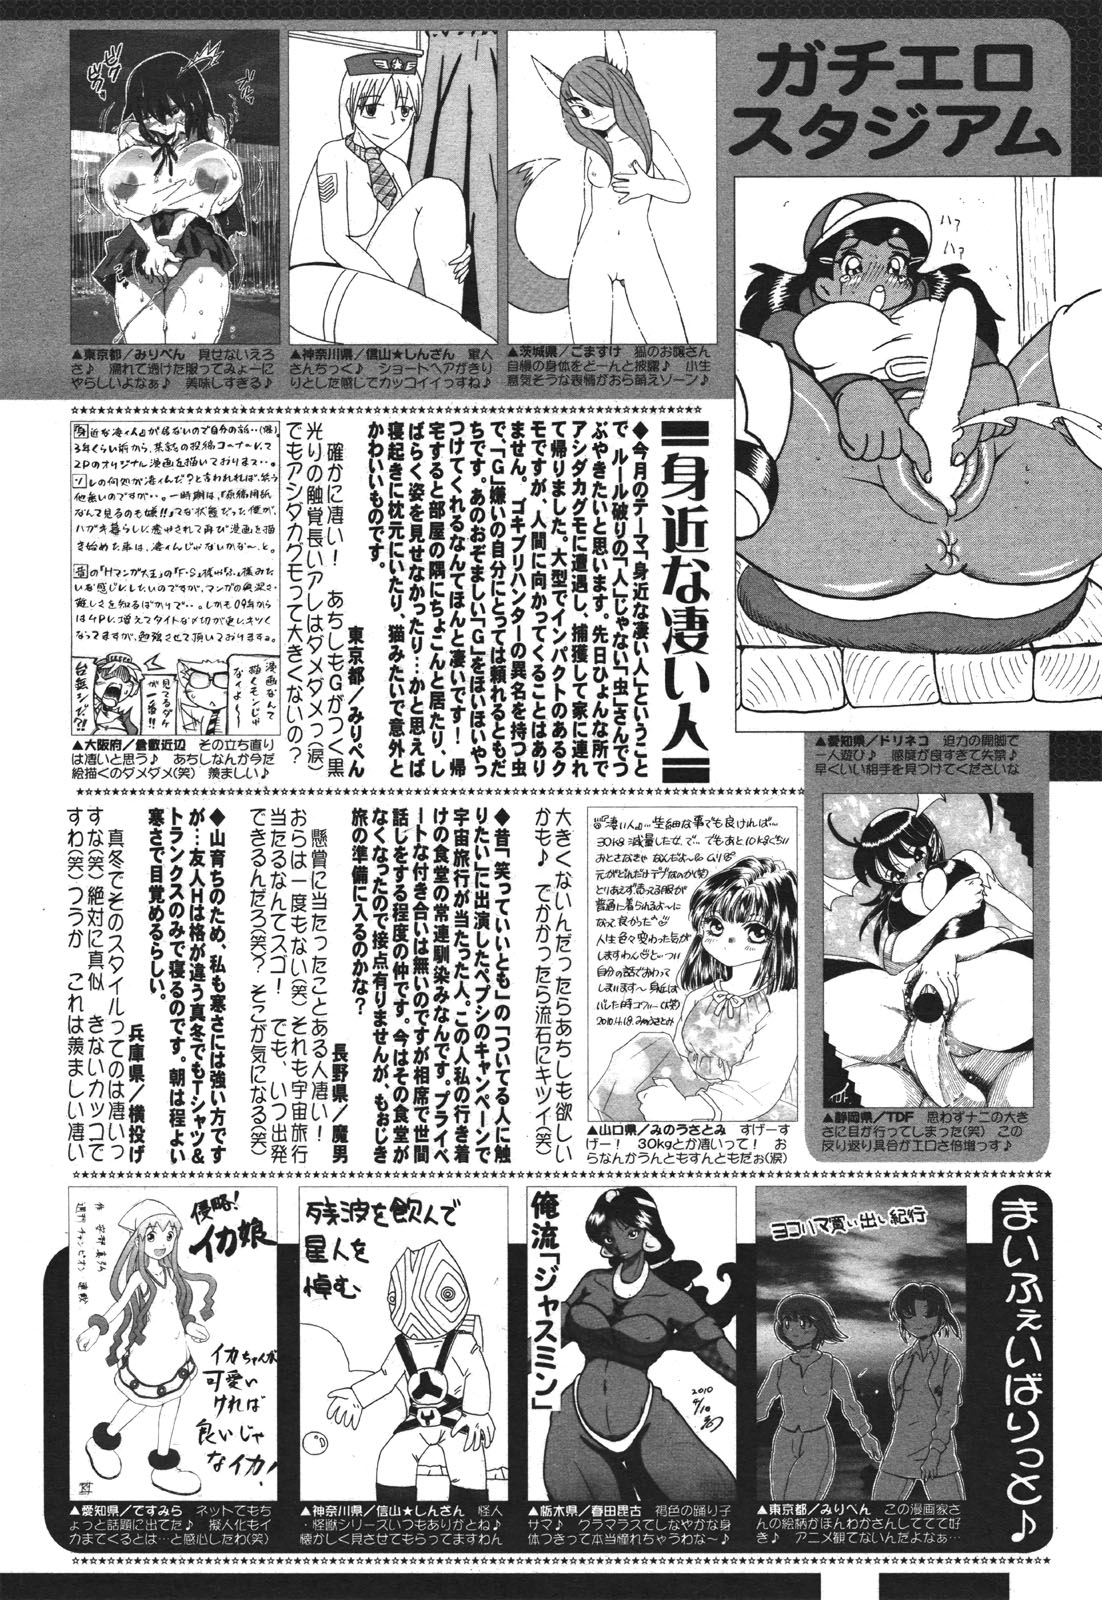 コミックゼロエクス Vol.30 2010年6月号